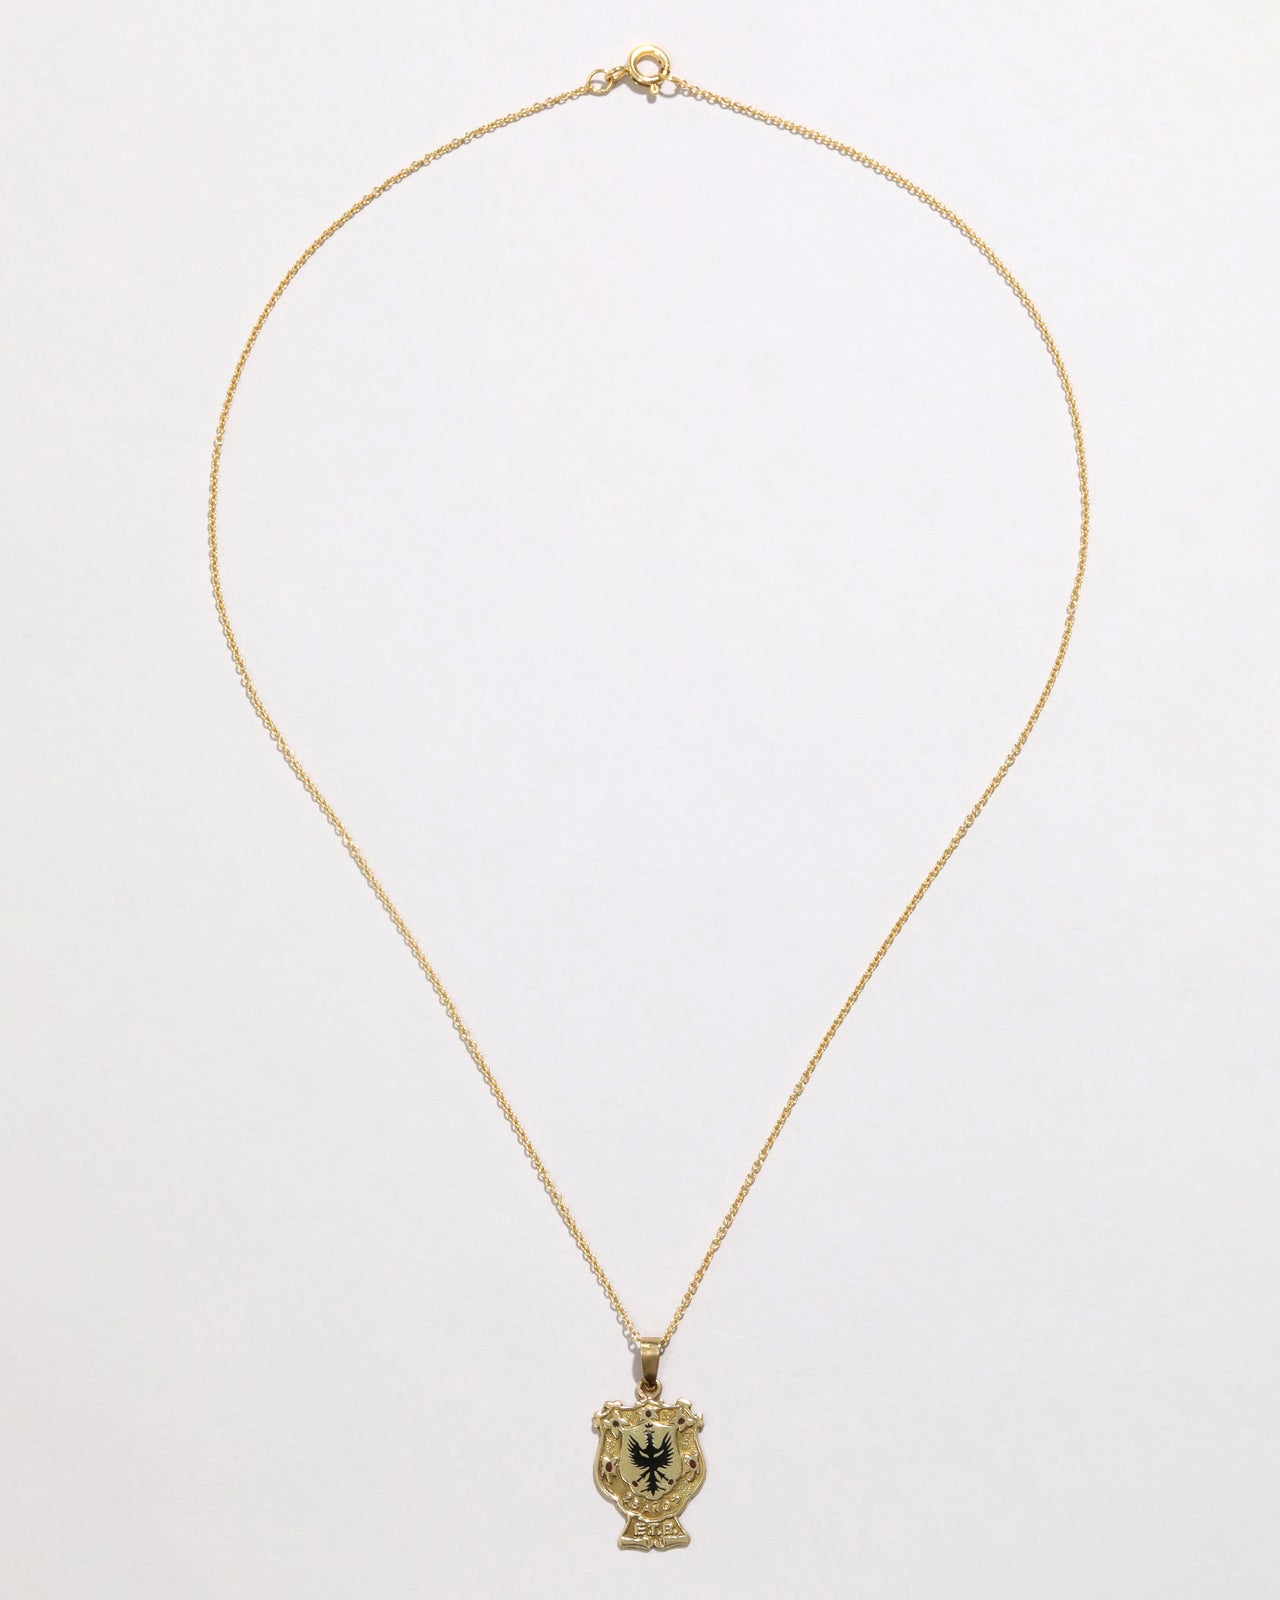 Antique 1920s 18k Gold Enameled Crest Pendant Necklace - Photo 2